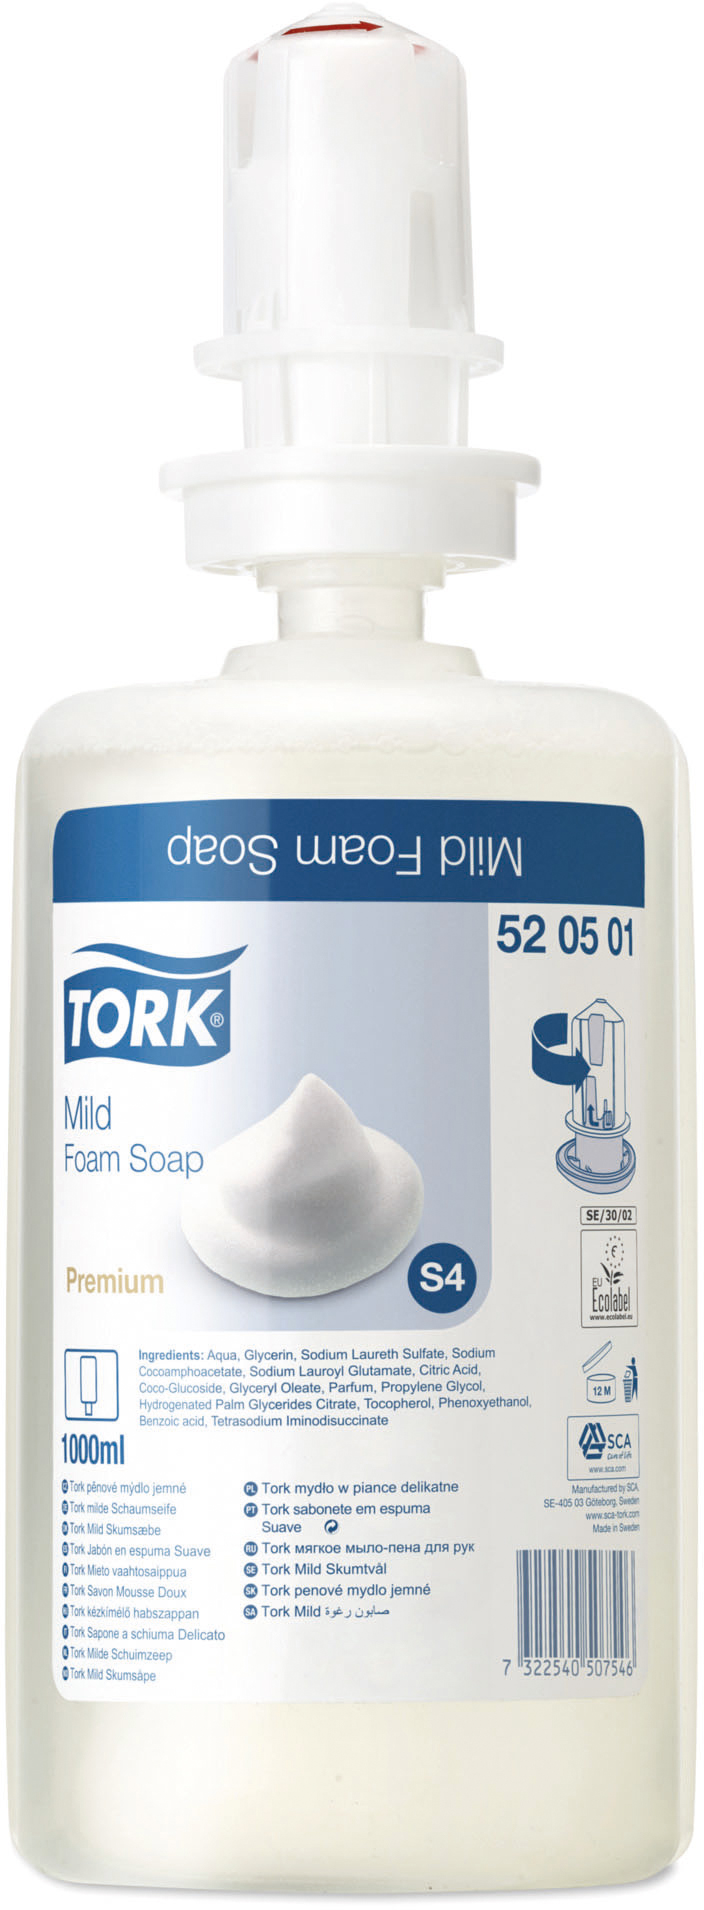 Tork Premium Schaumseife "mild", S4 - Schaumseifen System, parfümiert, weiß, 1 Liter